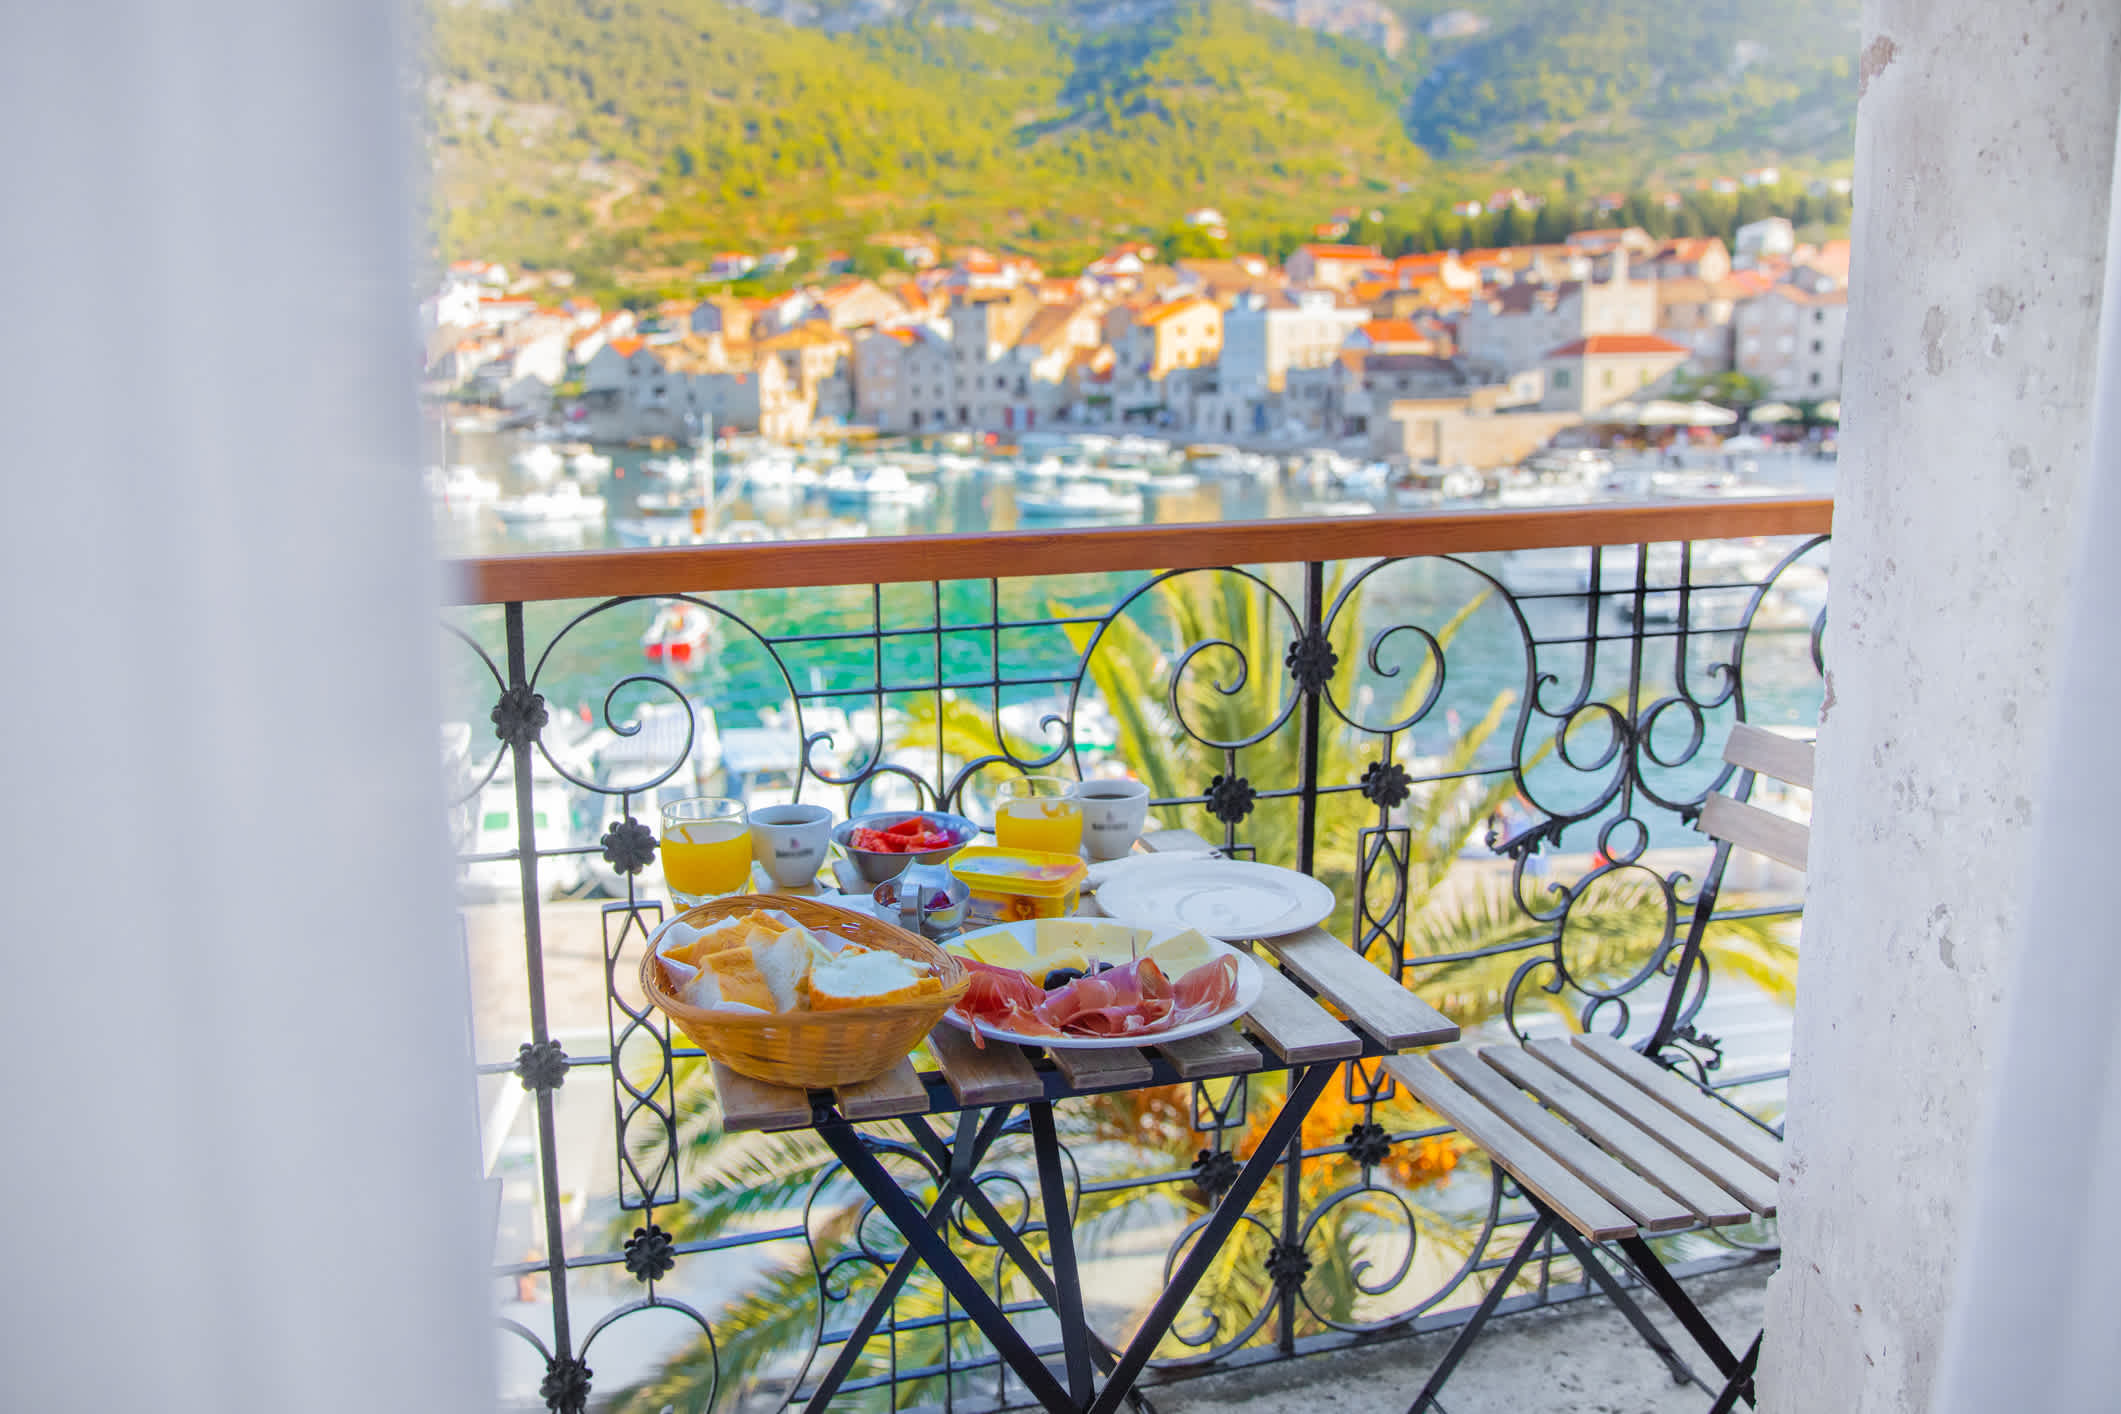 Frühstück auf Balkon mit Meerblick im Ferienort in Kroatien